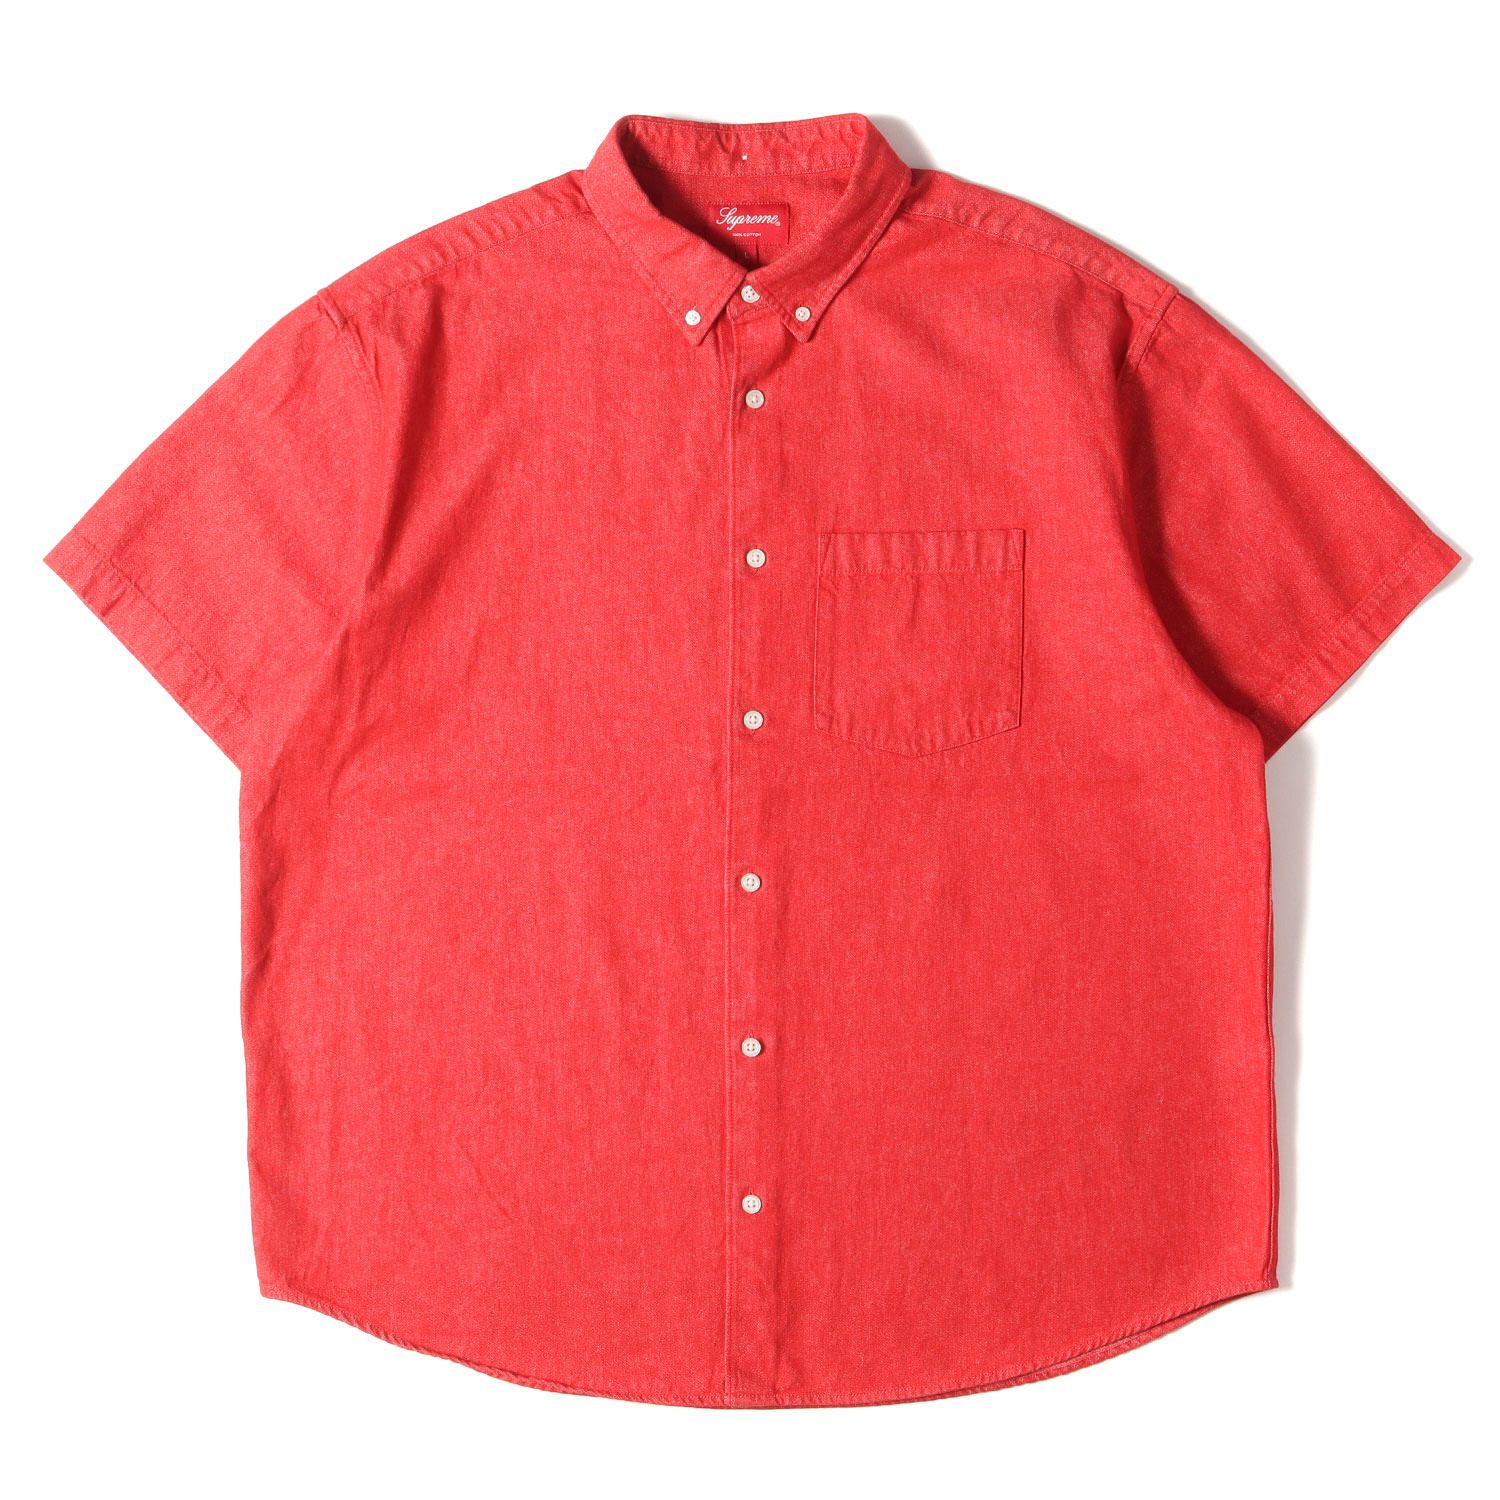 Supreme シュプリーム シャツ サイズ:L 21SS エンボスロゴ デニム ボタンダウン 半袖 シャツ Embossed Denim S/S  Shirt レッド 赤 トップス カジュアルシャツ コットン ストリート ブランド